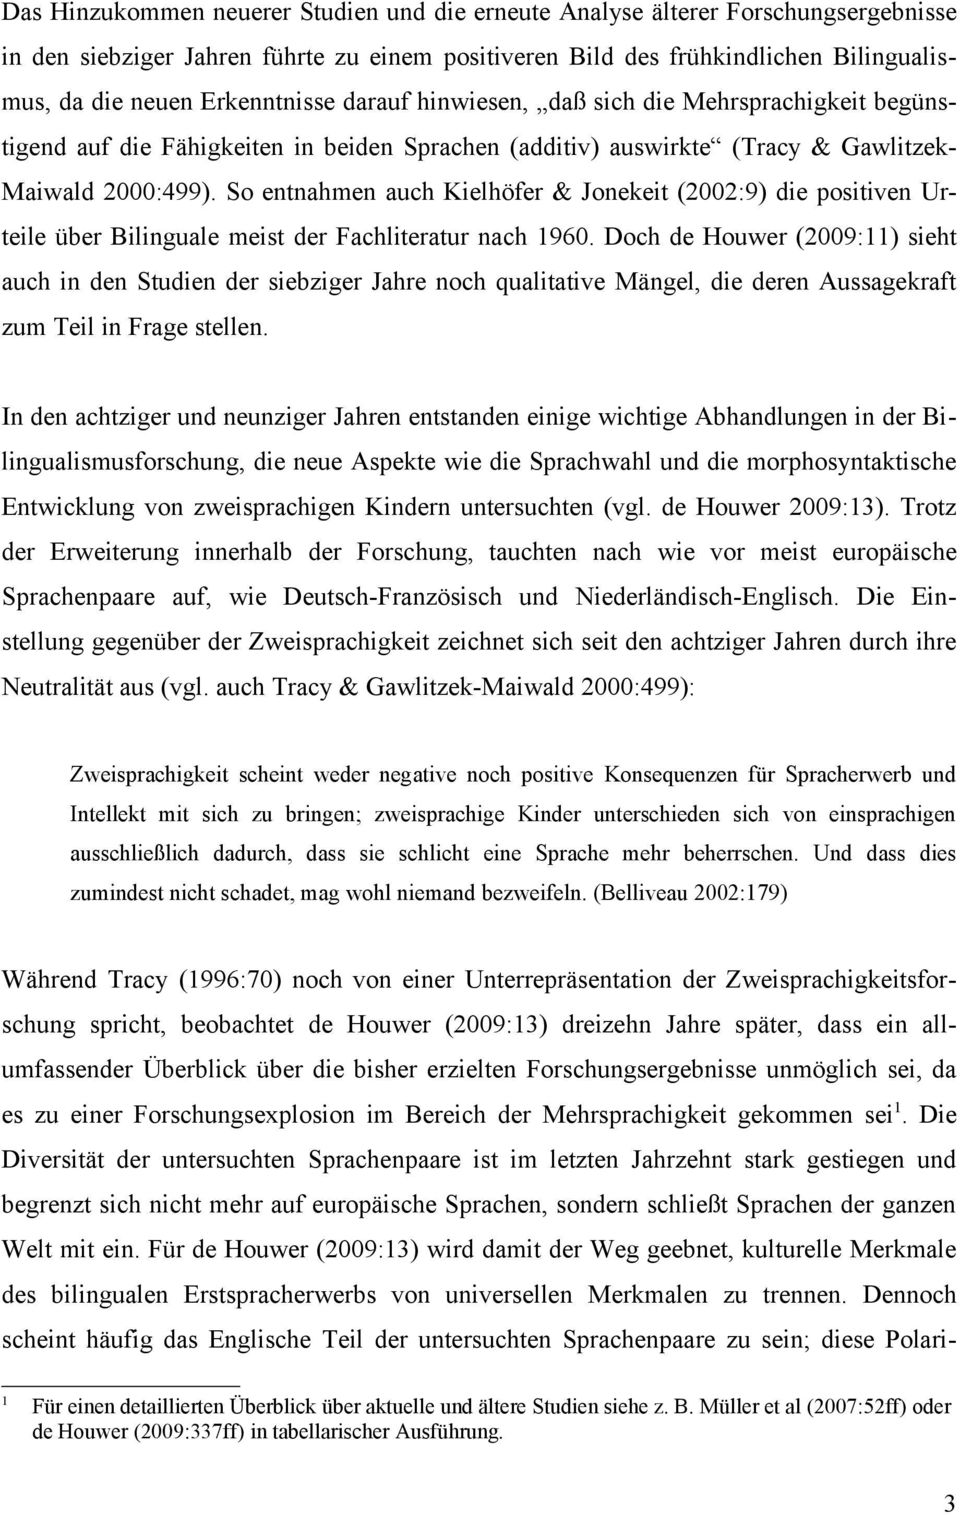 So entnahmen auch Kielhöfer & Jonekeit (2002:9) die positiven Urteile über Bilinguale meist der Fachliteratur nach 1960.